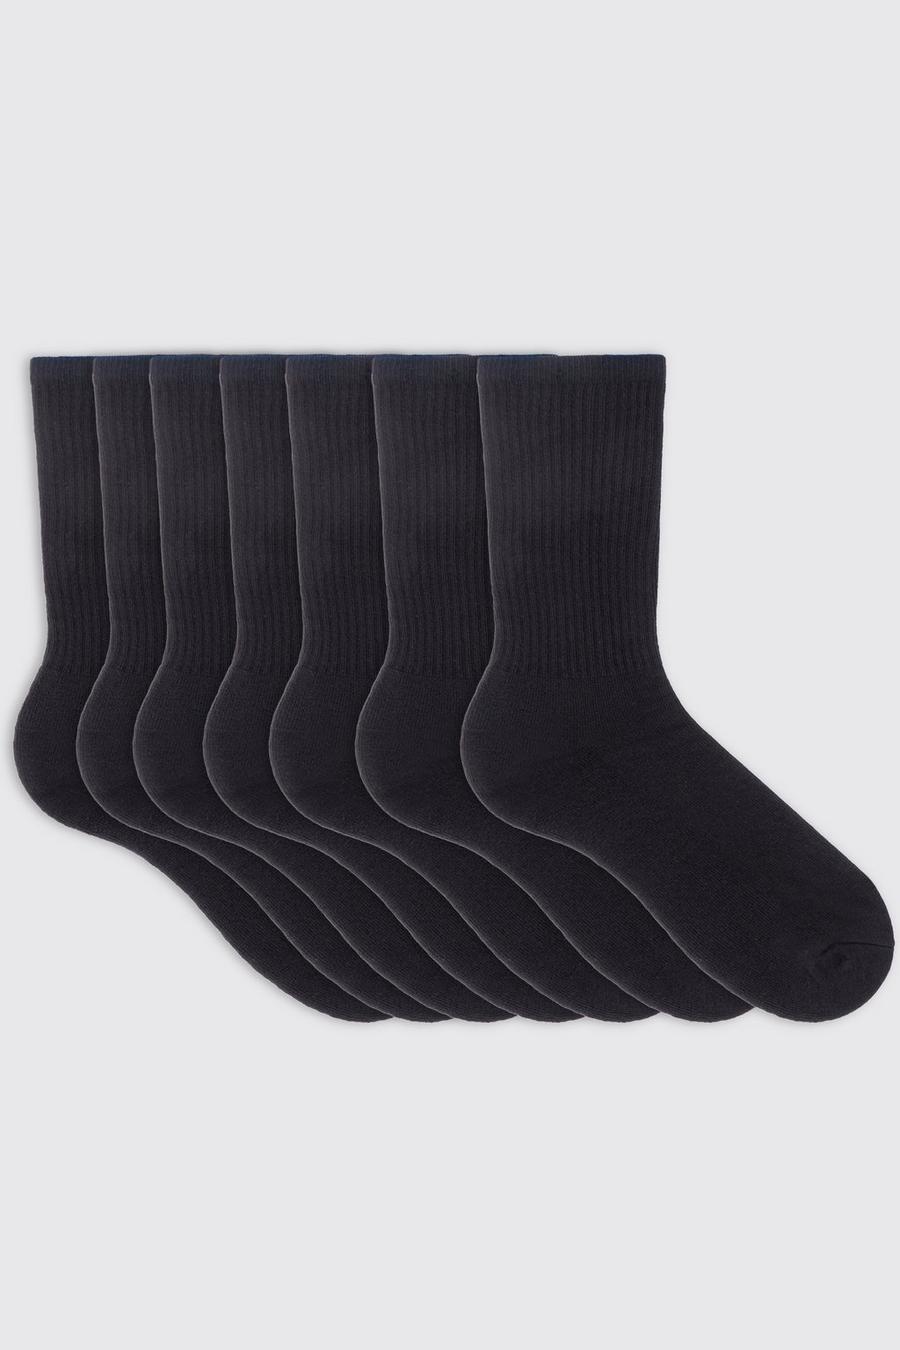 Lot de 7 paires de chaussettes unies, Black schwarz